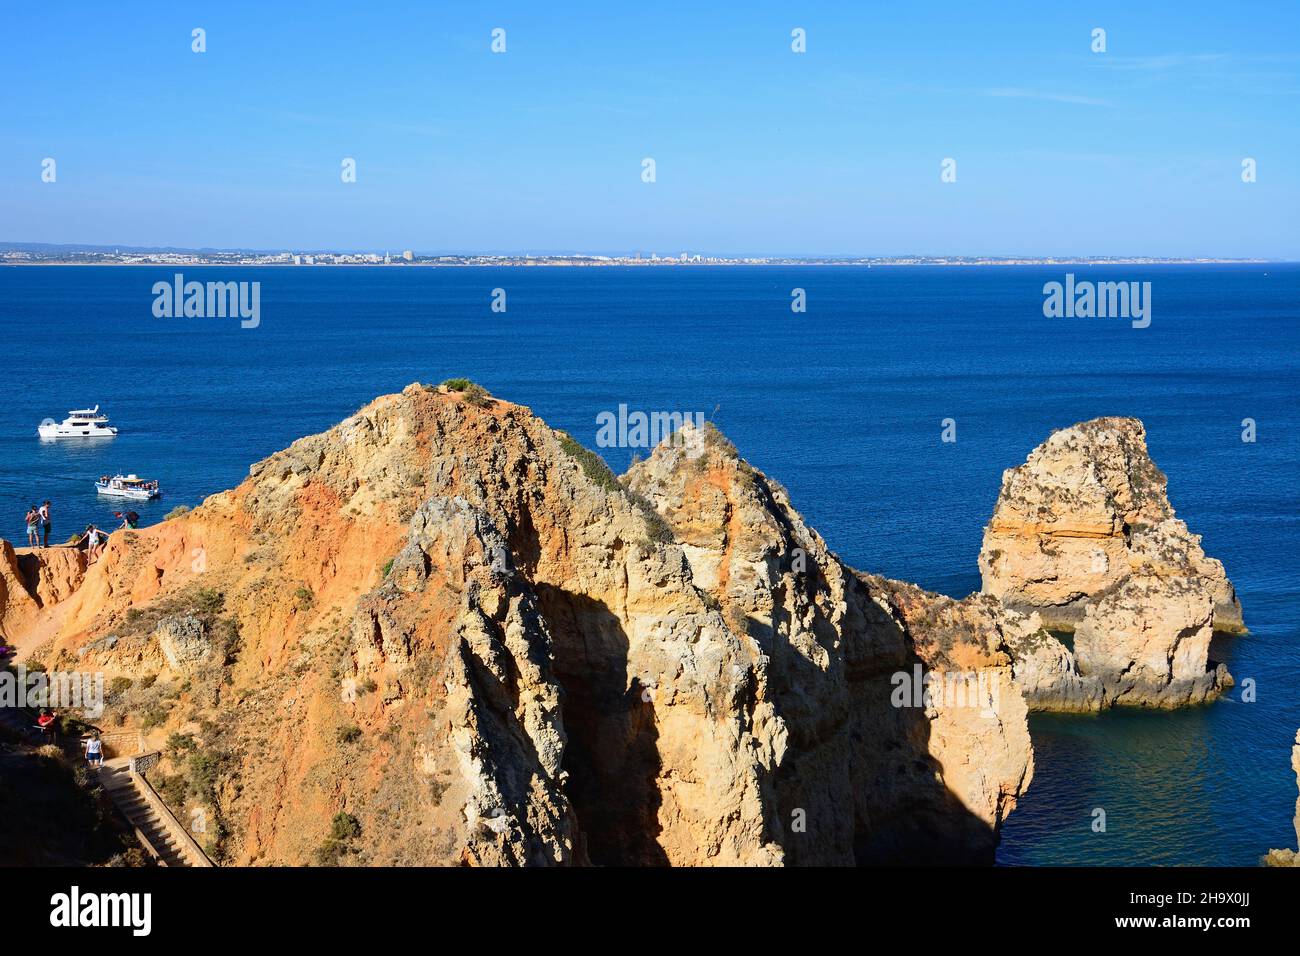 Vista elevada de los turistas que se encuentran en los acantilados con barcos en la bahía, Ponta da Piedade, Lagos, Algarve, Portugal, Europa. Foto de stock